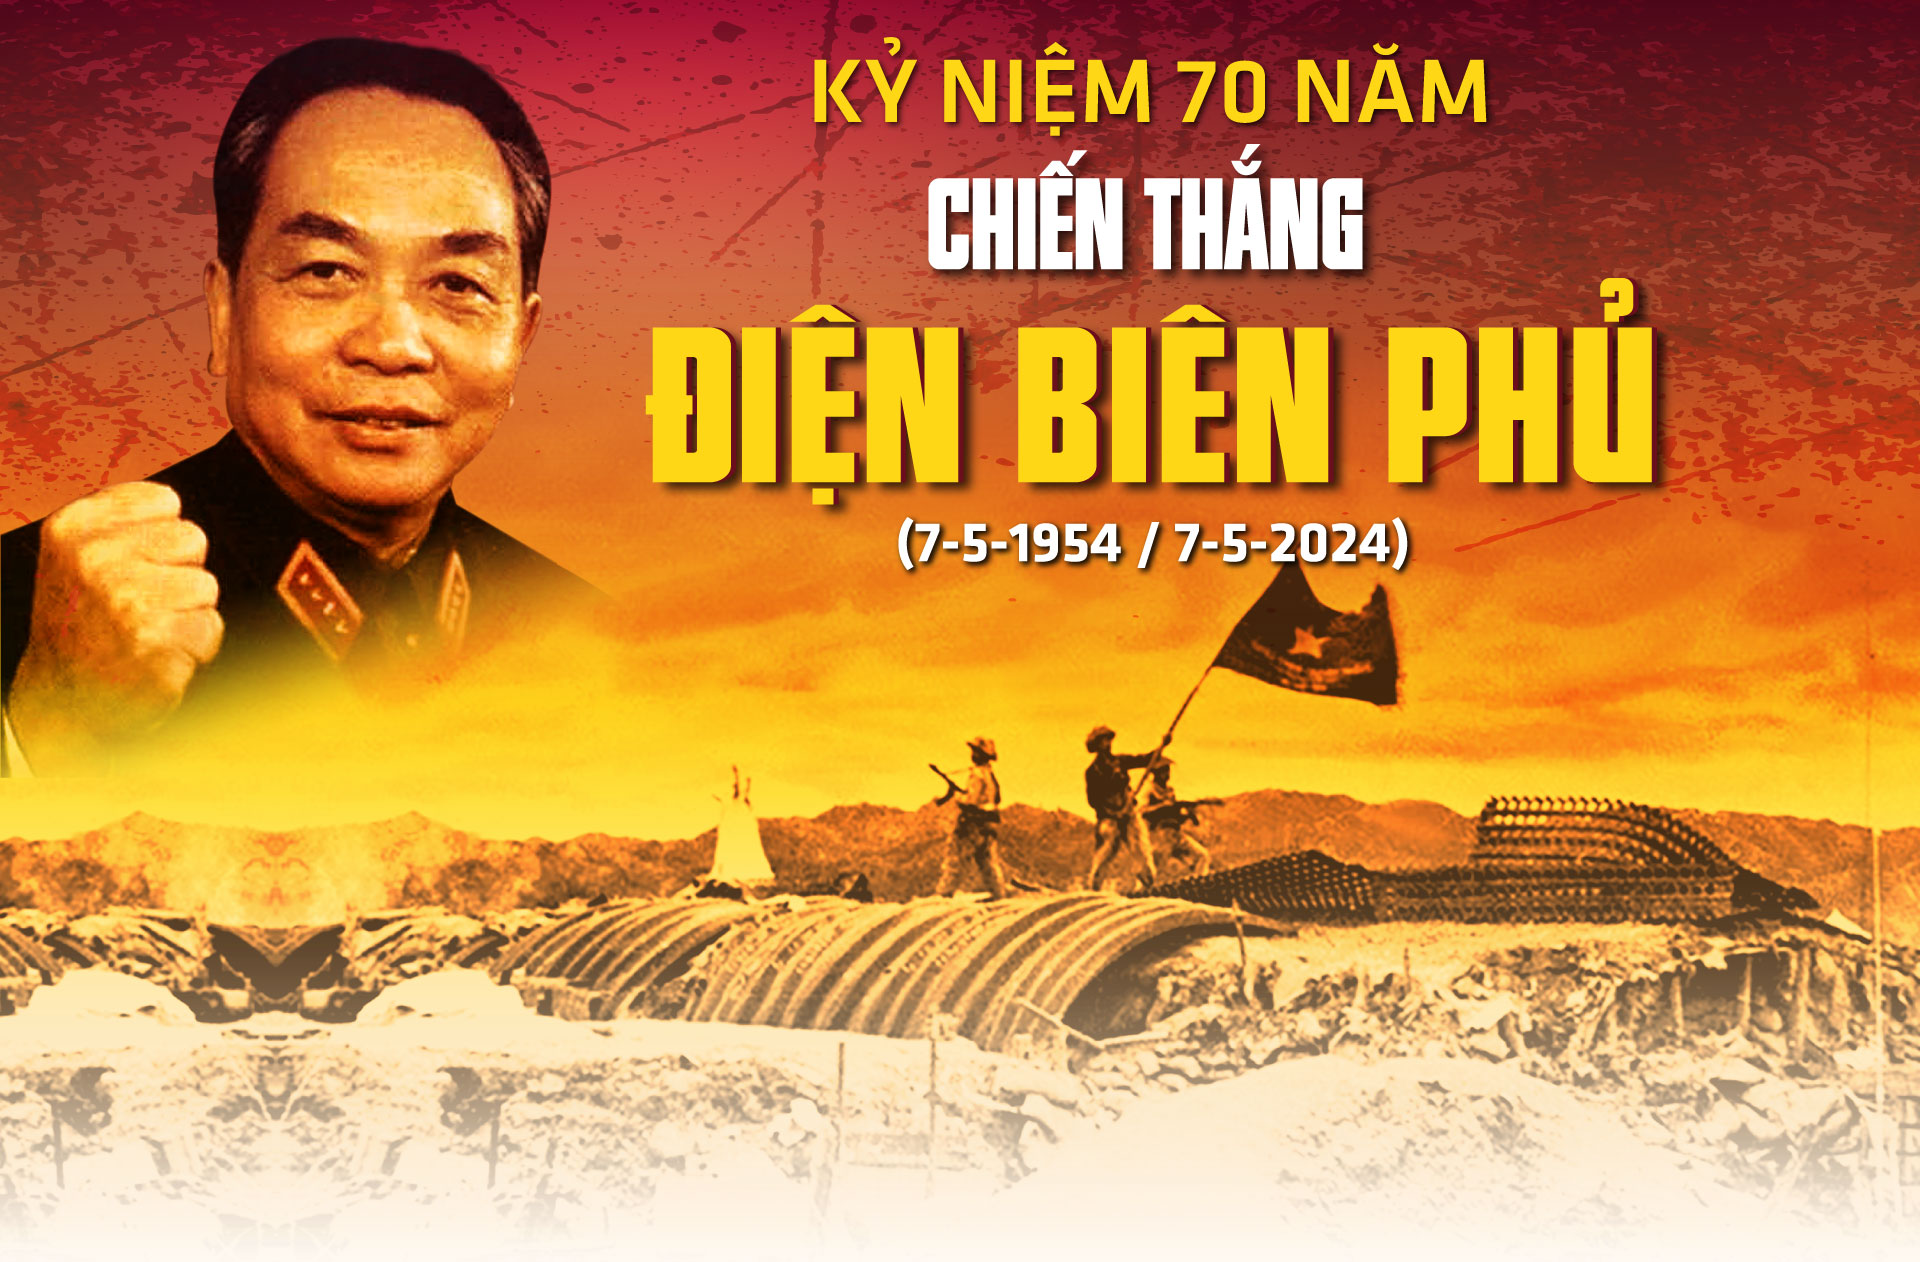 70 năm nhìn lại chiến thắng Điện Biên Phủ, chúng ta càng thêm tự hào về truyền thống vẻ vang của dân tộc Việt Nam